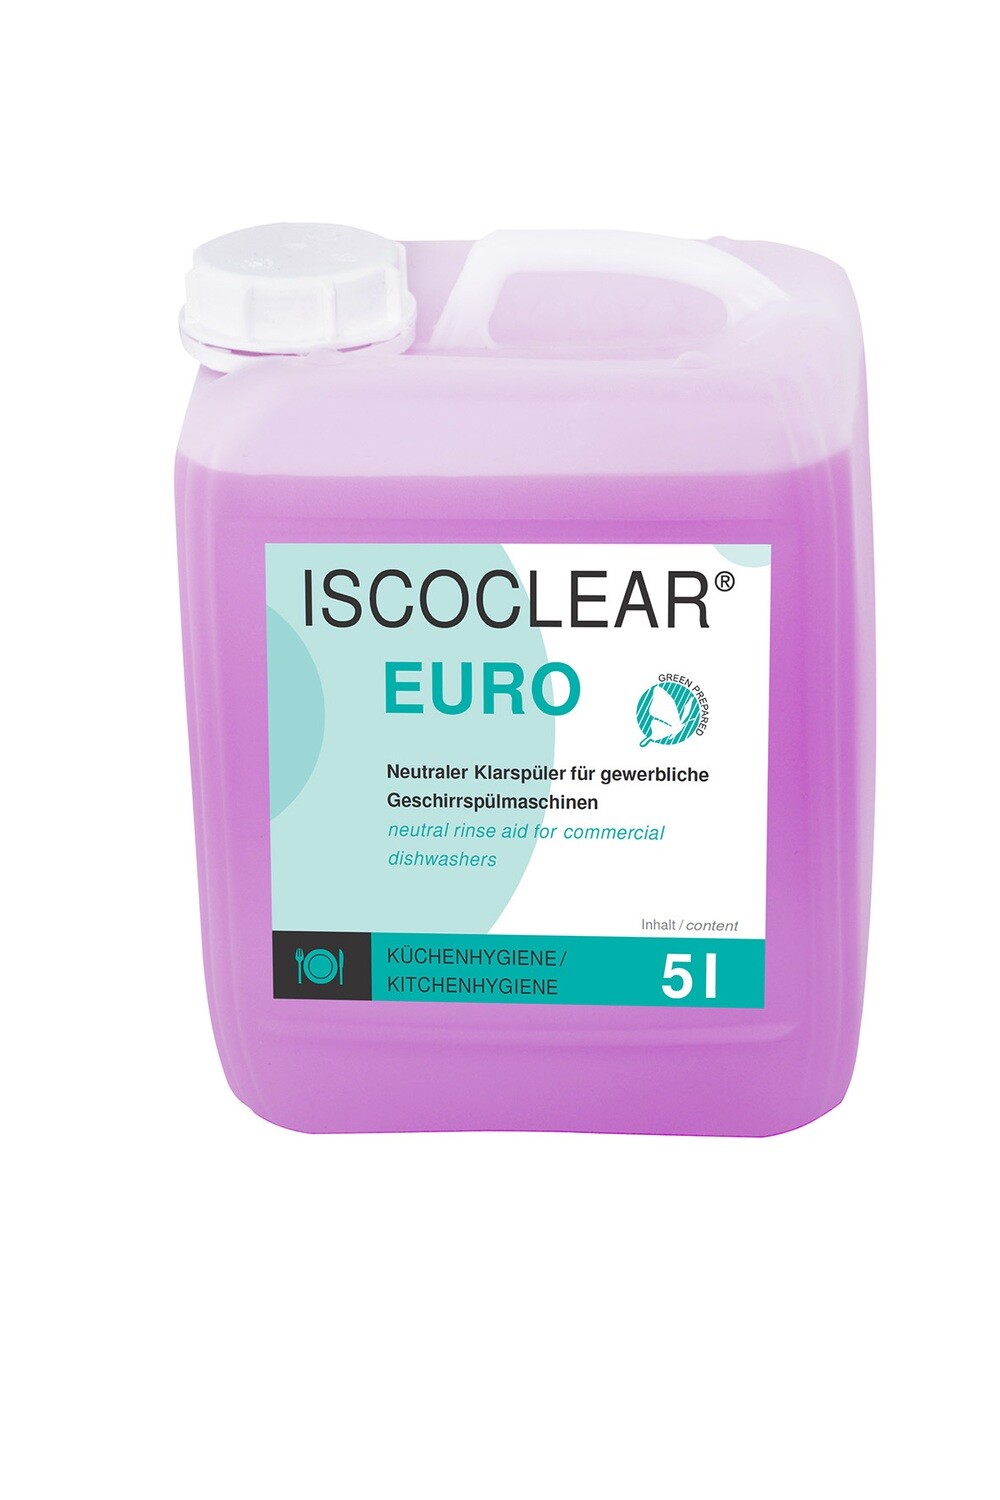 ISCOCLEAR euro
Spezialklarspüler neutral für gewerbliche Geschirrspülmaschinen